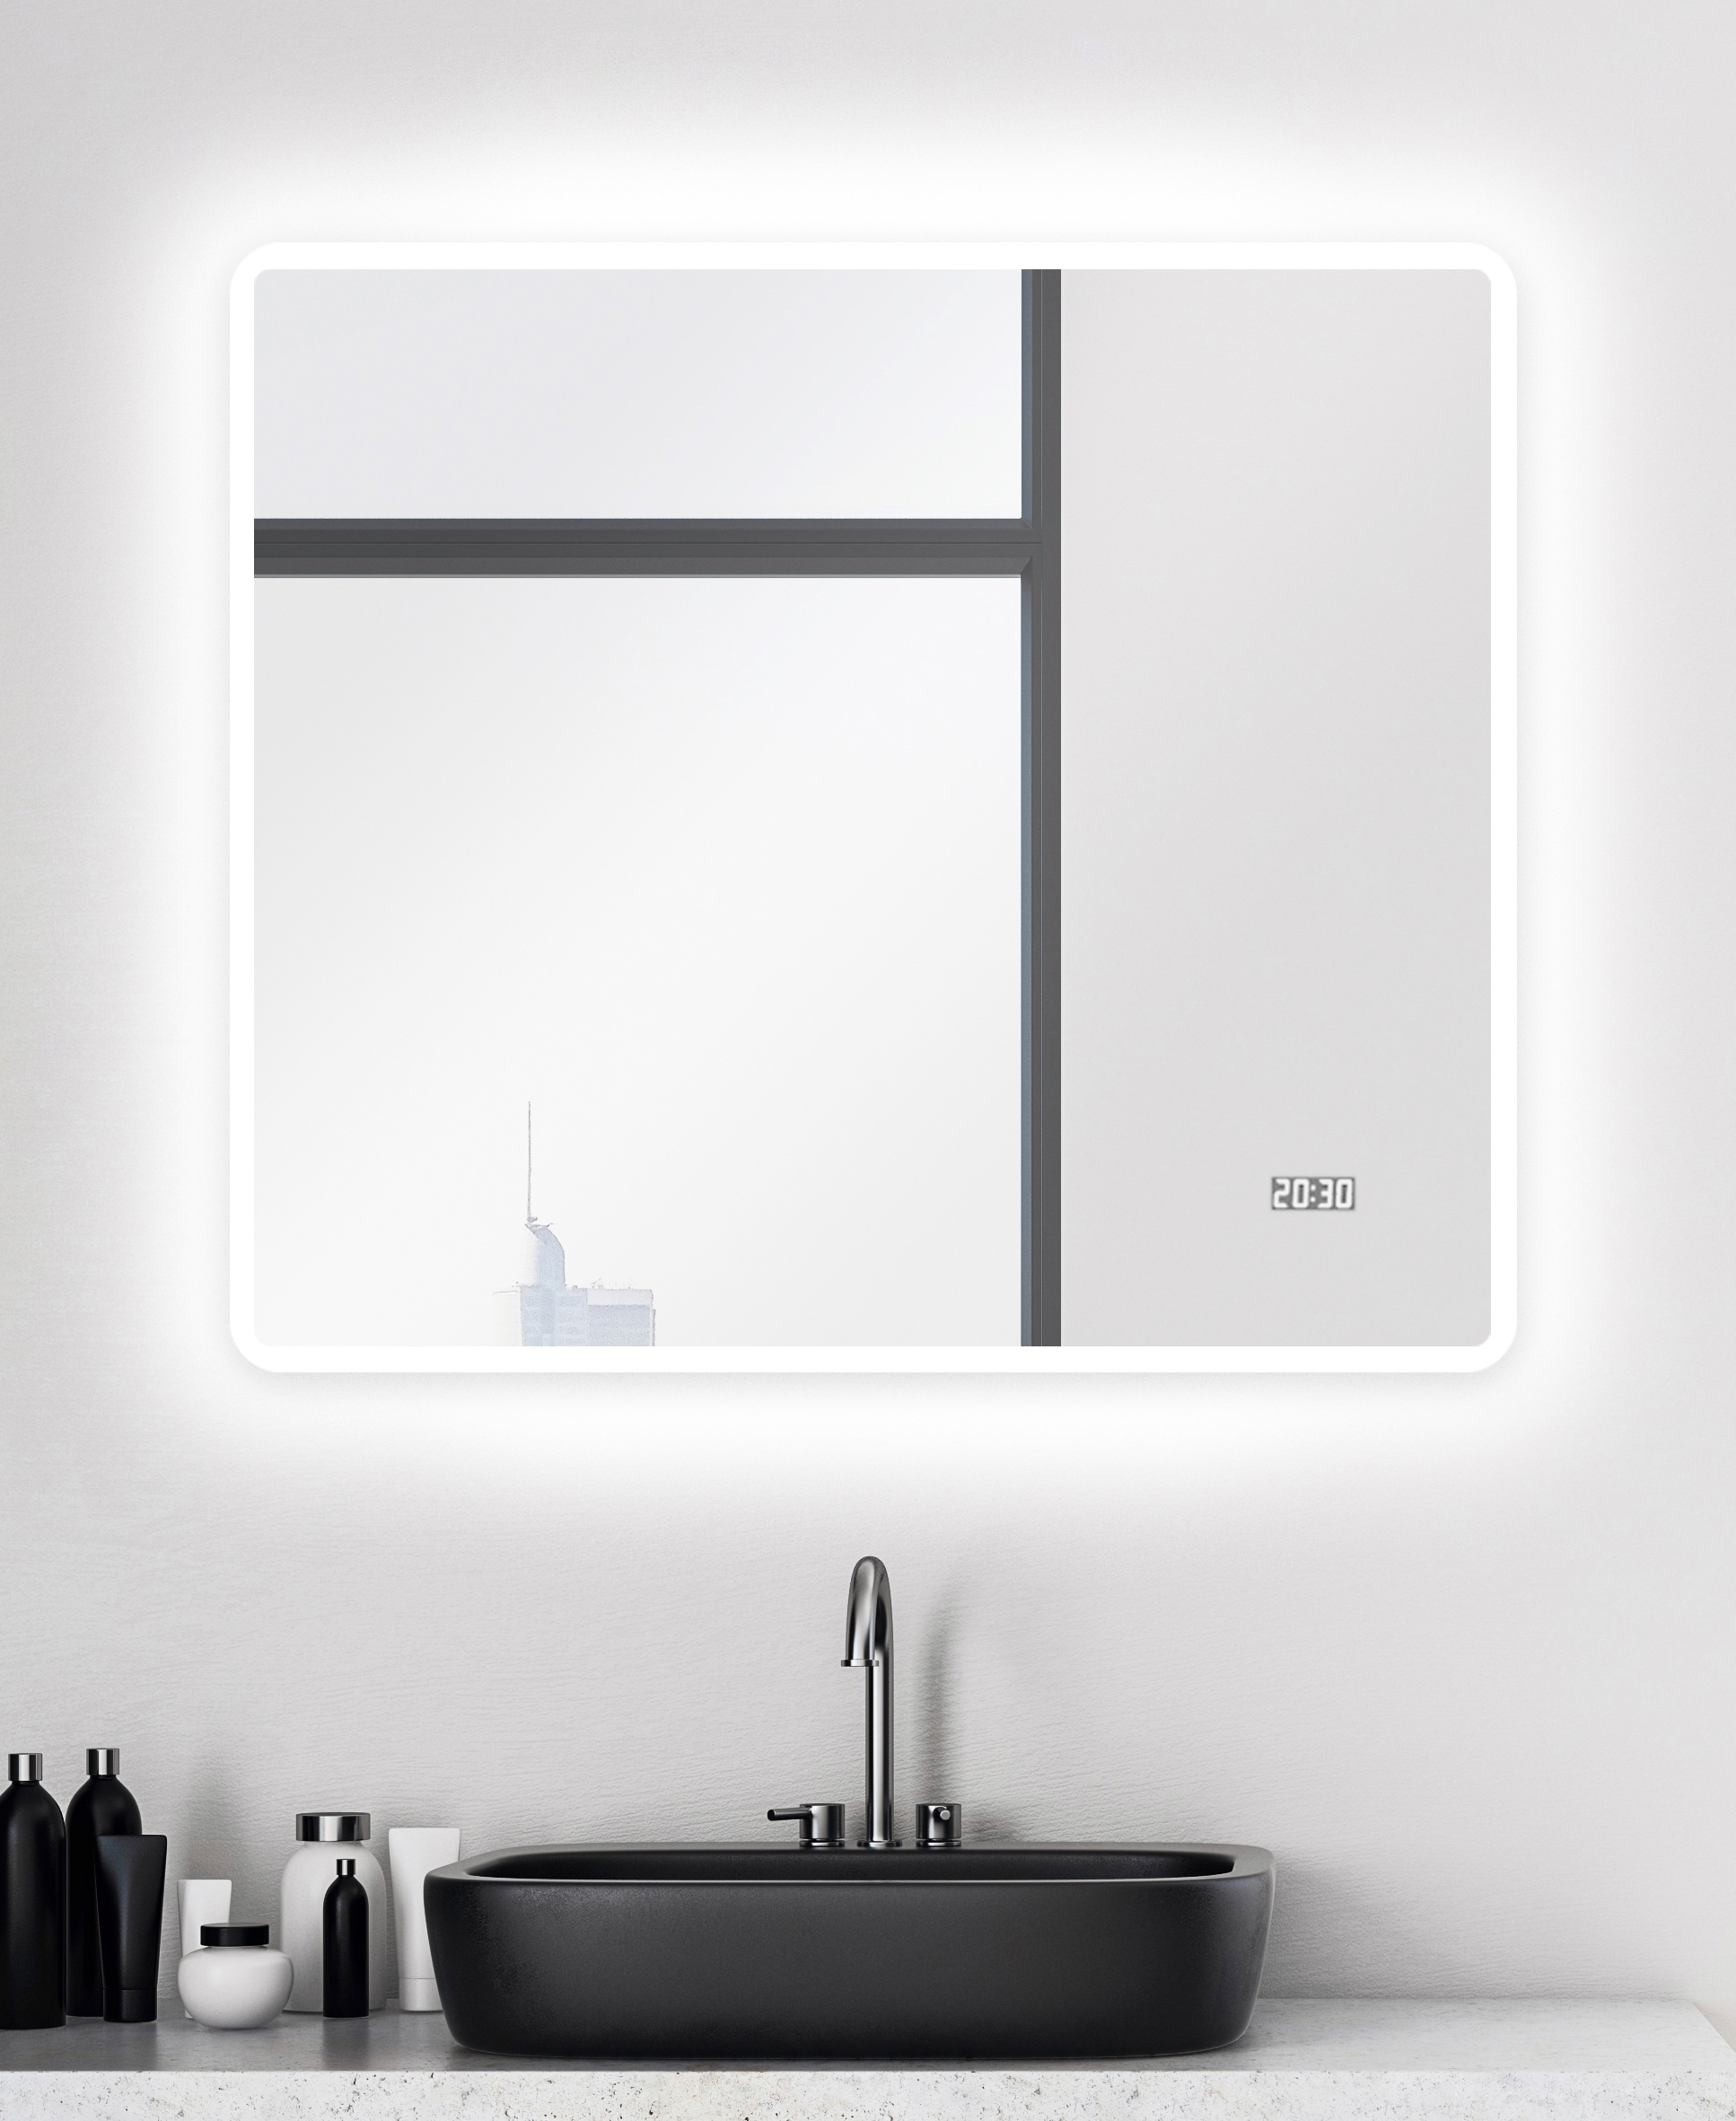 Talos Badspiegel »Sun«, BxH: 80x70 cm, energiesparend, mit Digitaluhr